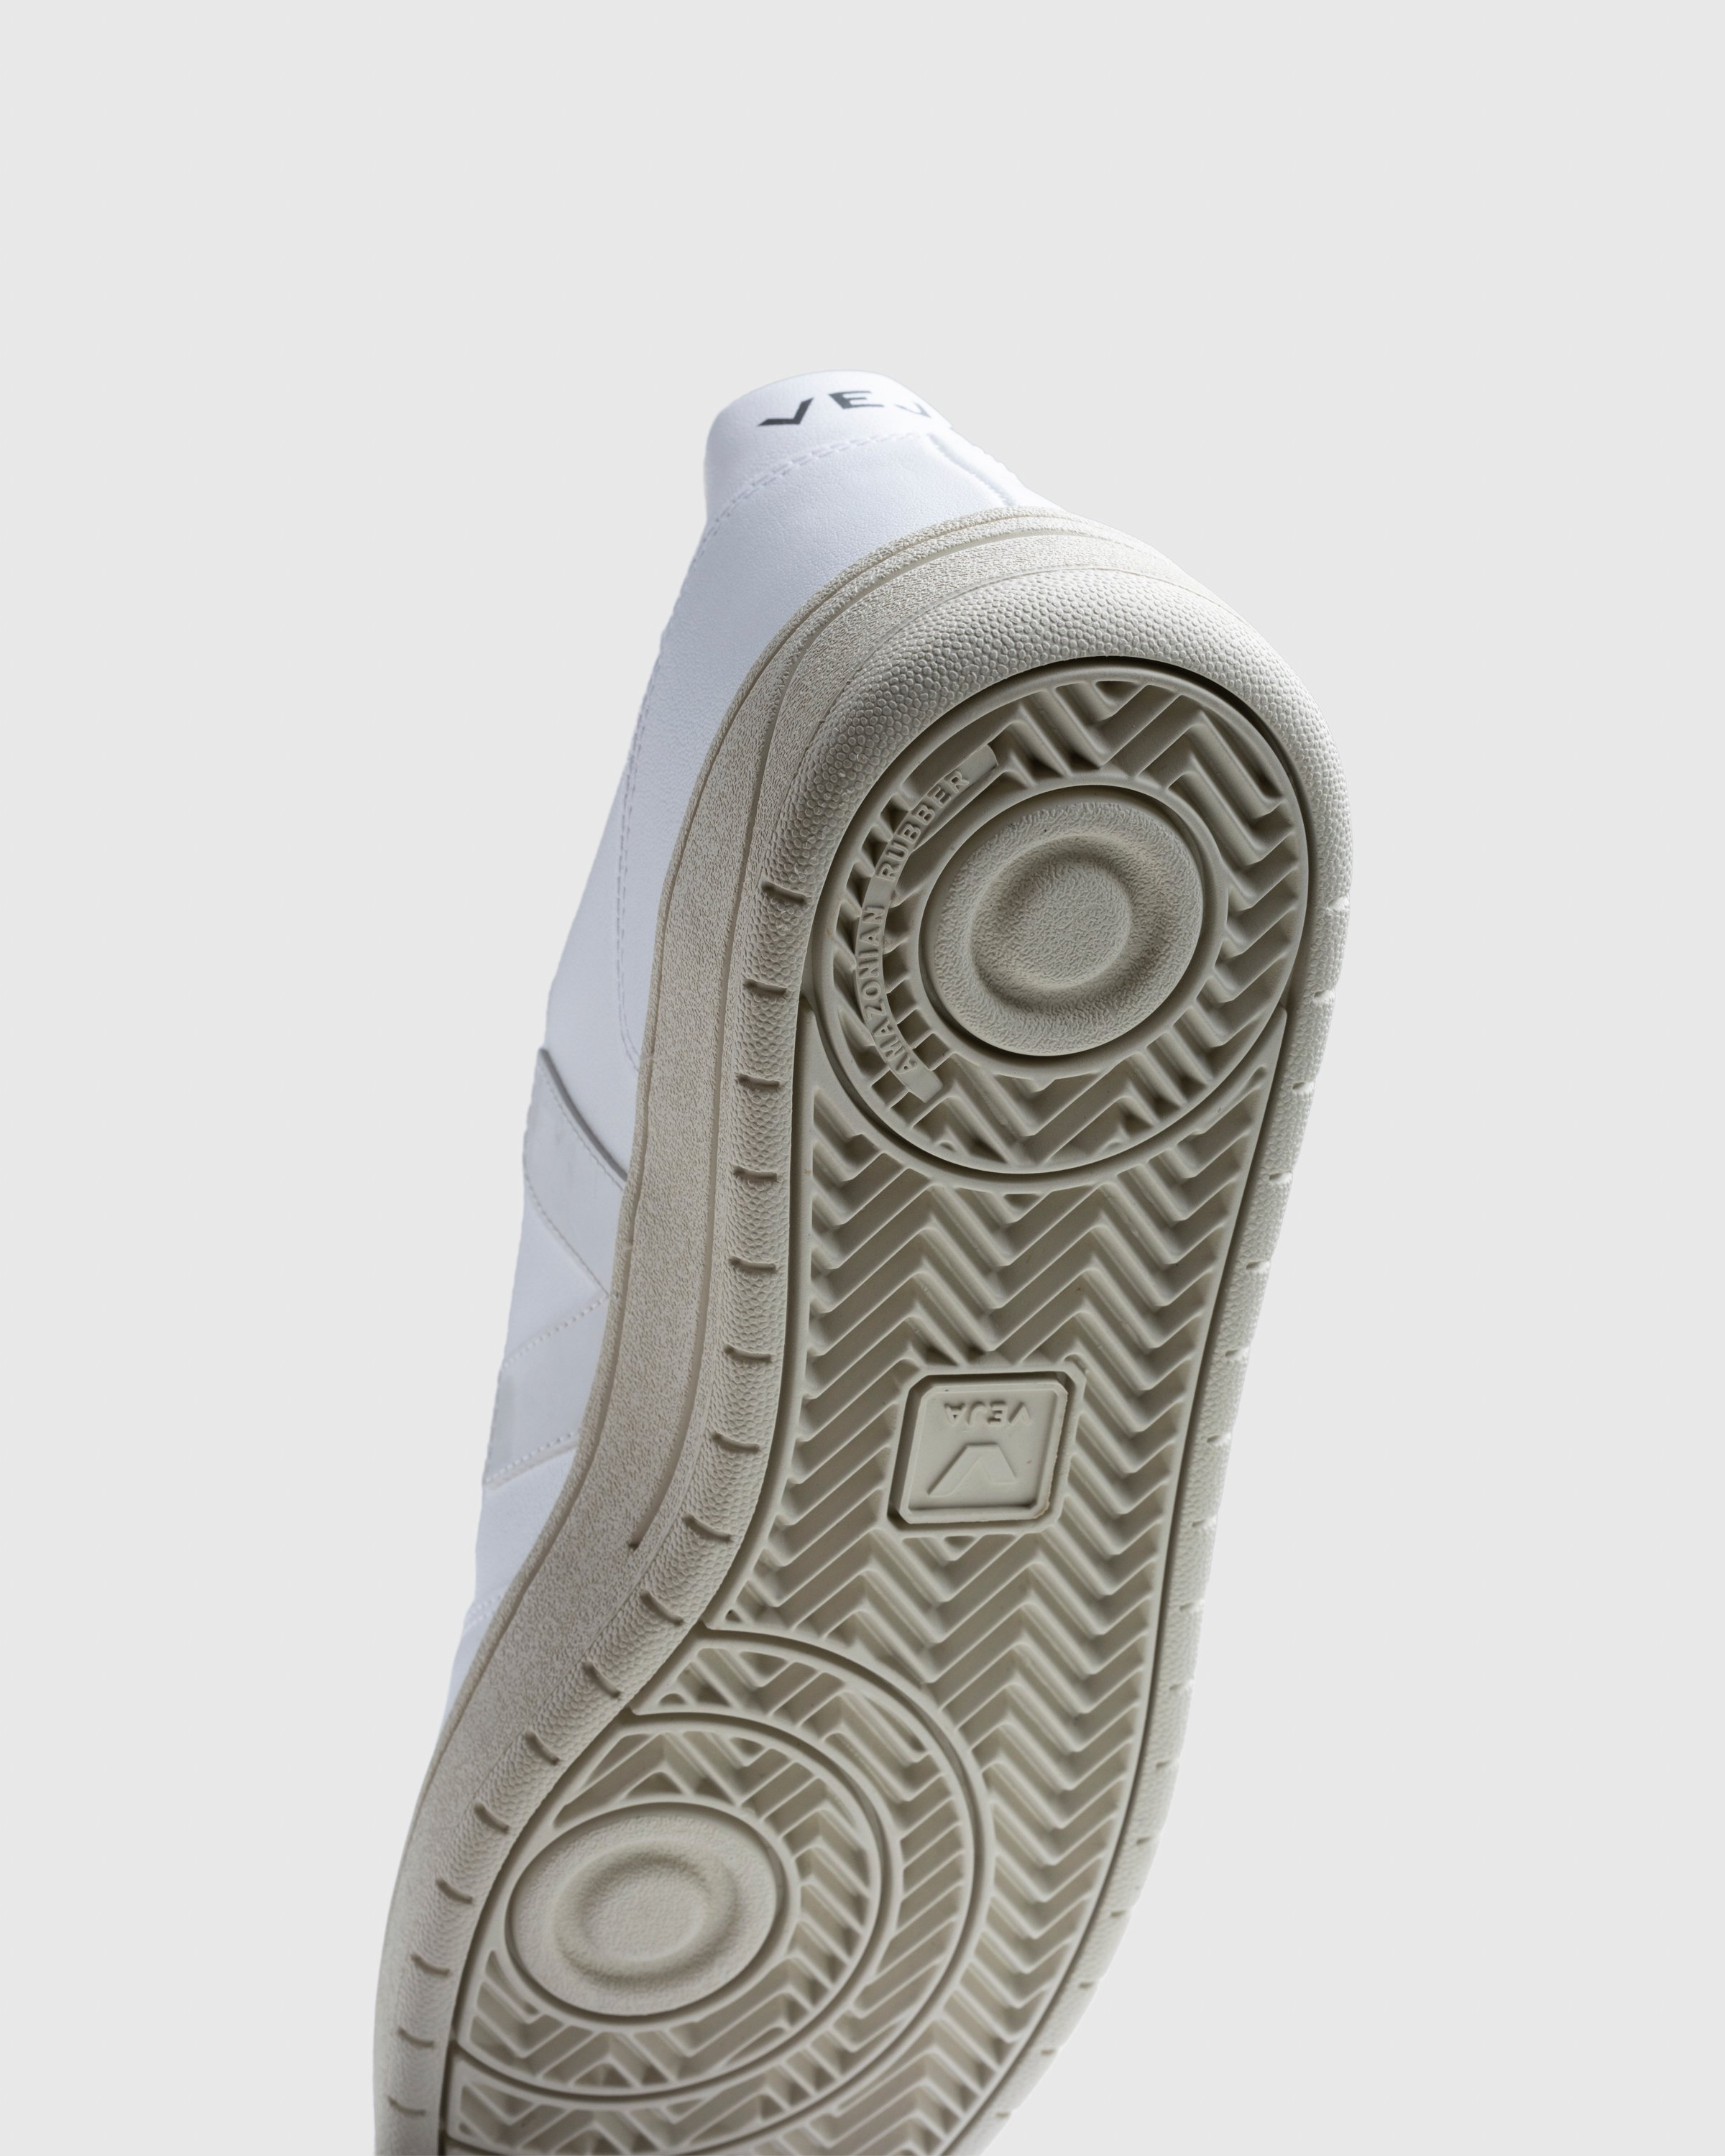 VEJA - V-10 - Footwear - White - Image 6